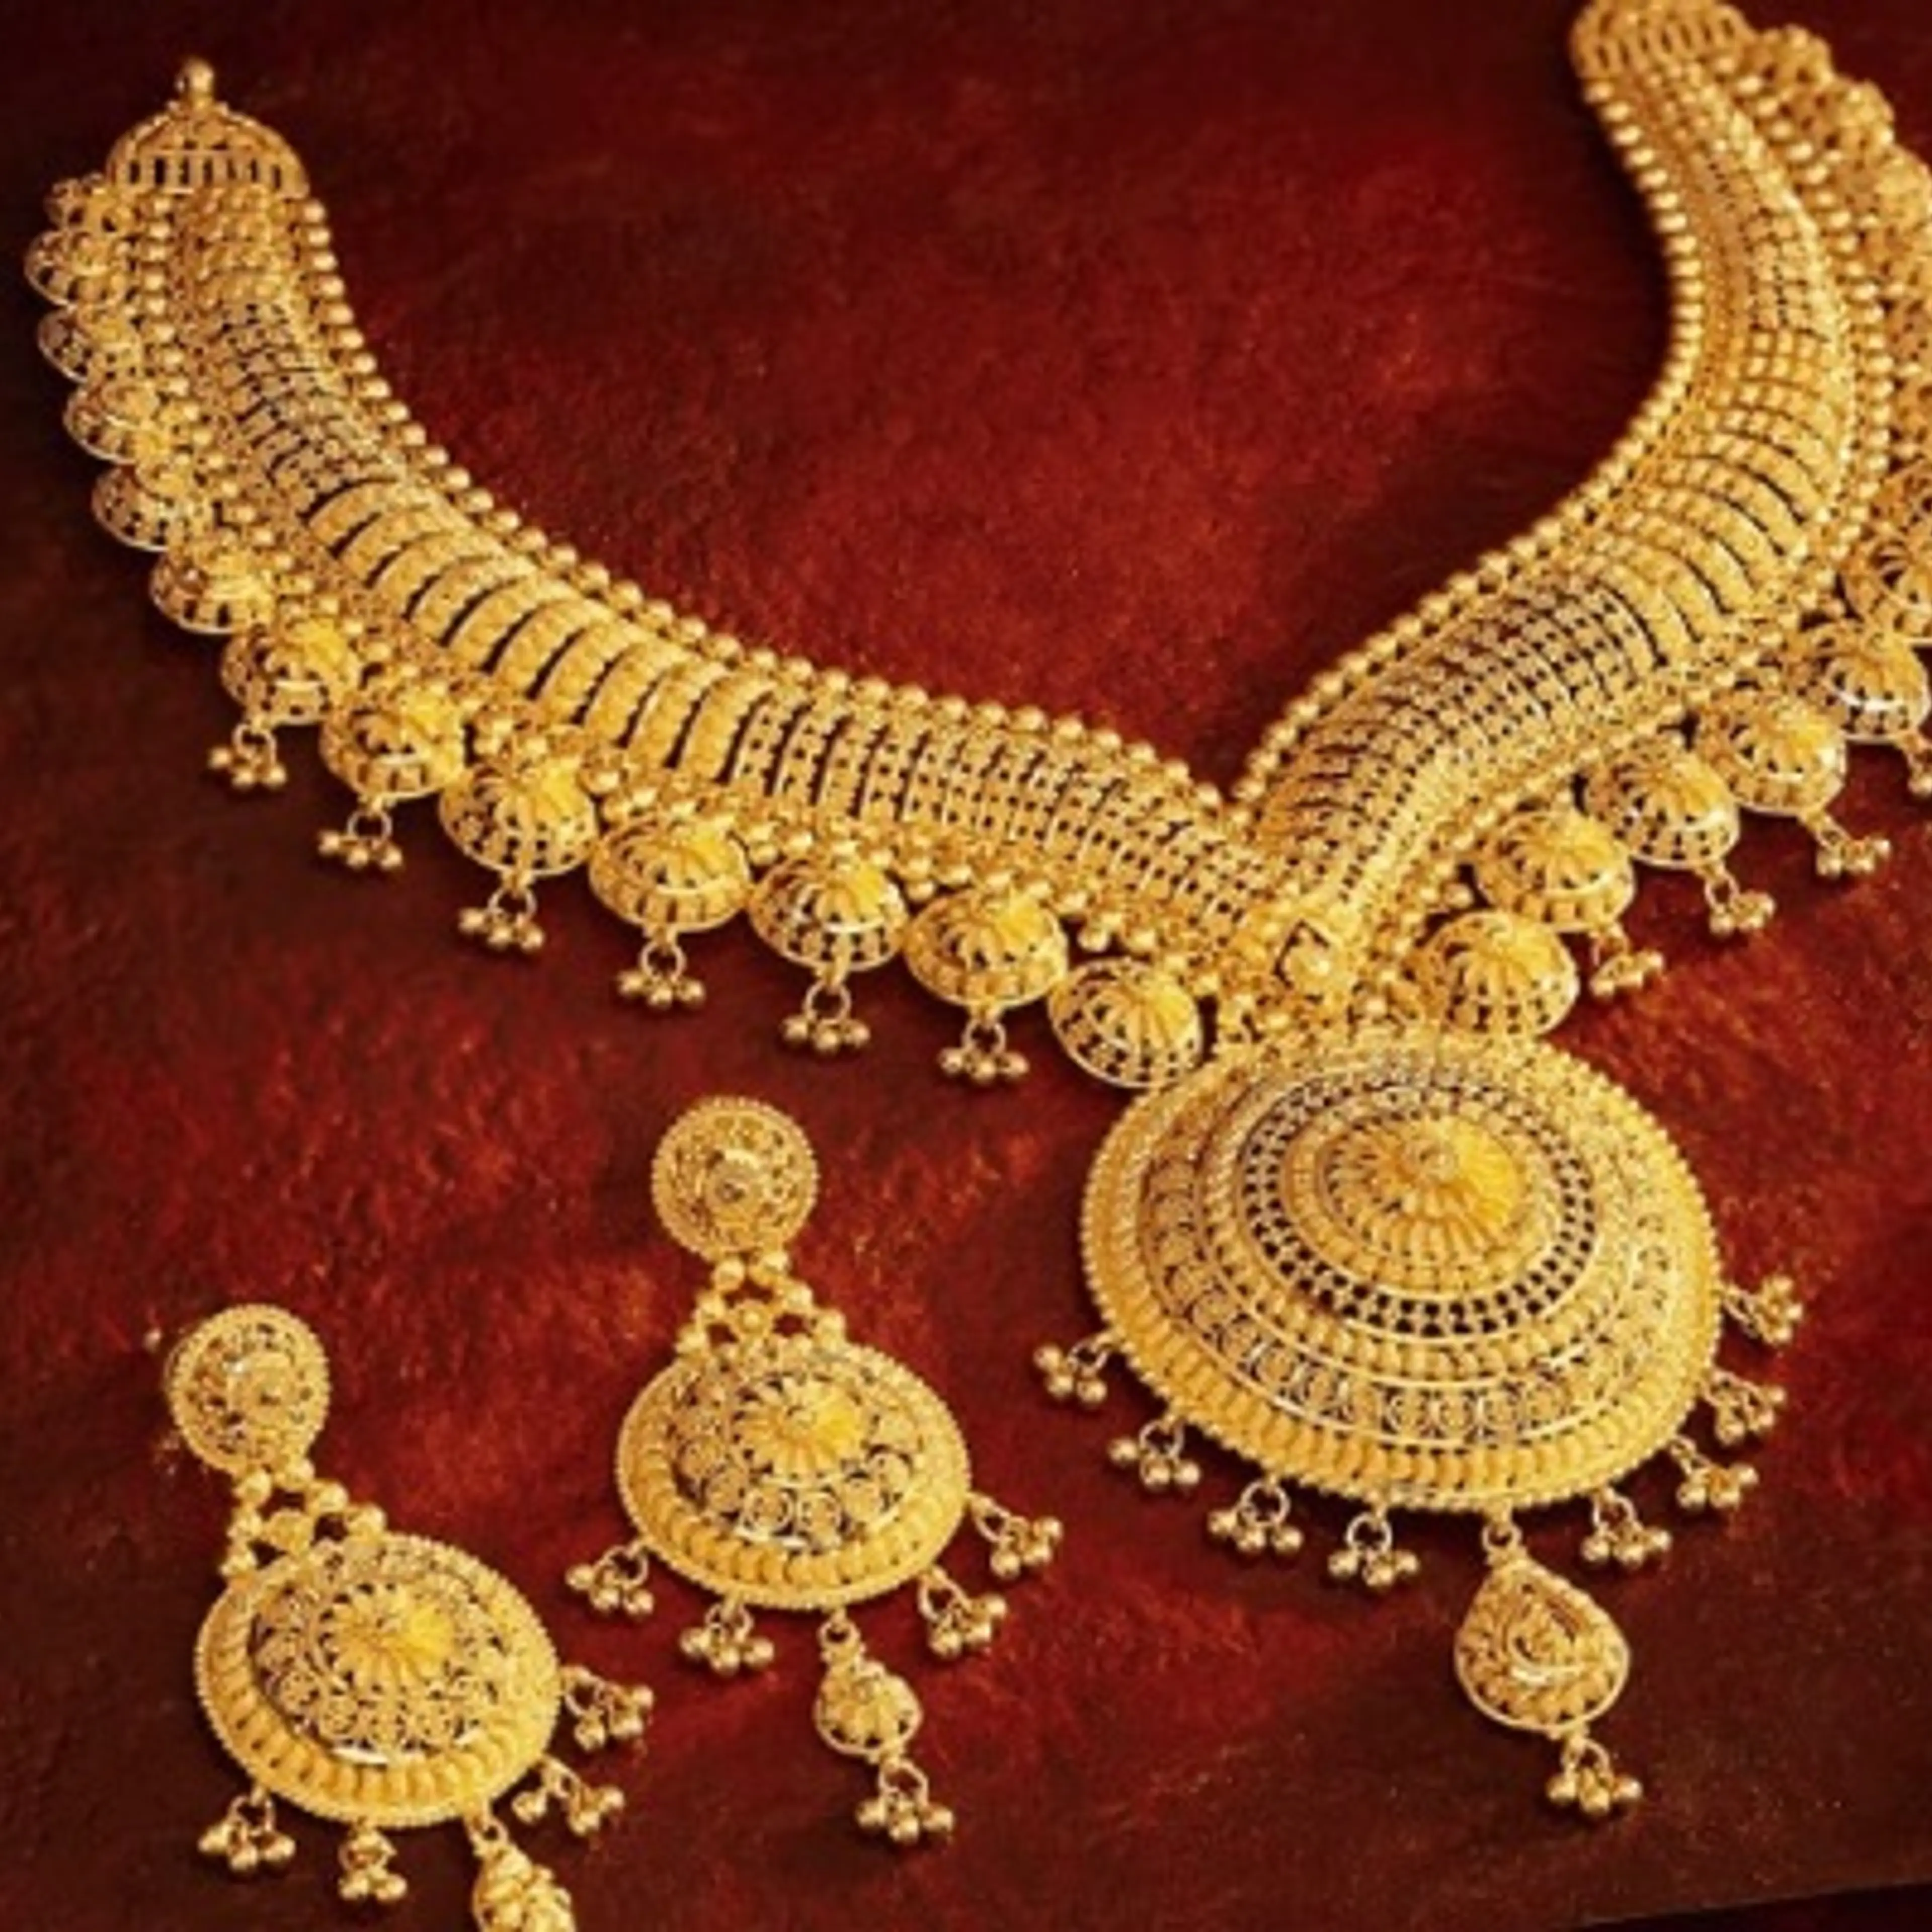 Gold Rate Chennai: ஆபரணத் தங்கம் வாங்க நல்வாய்ப்பு - இன்றும் தங்கம் விலை மேலும் குறைந்தது!